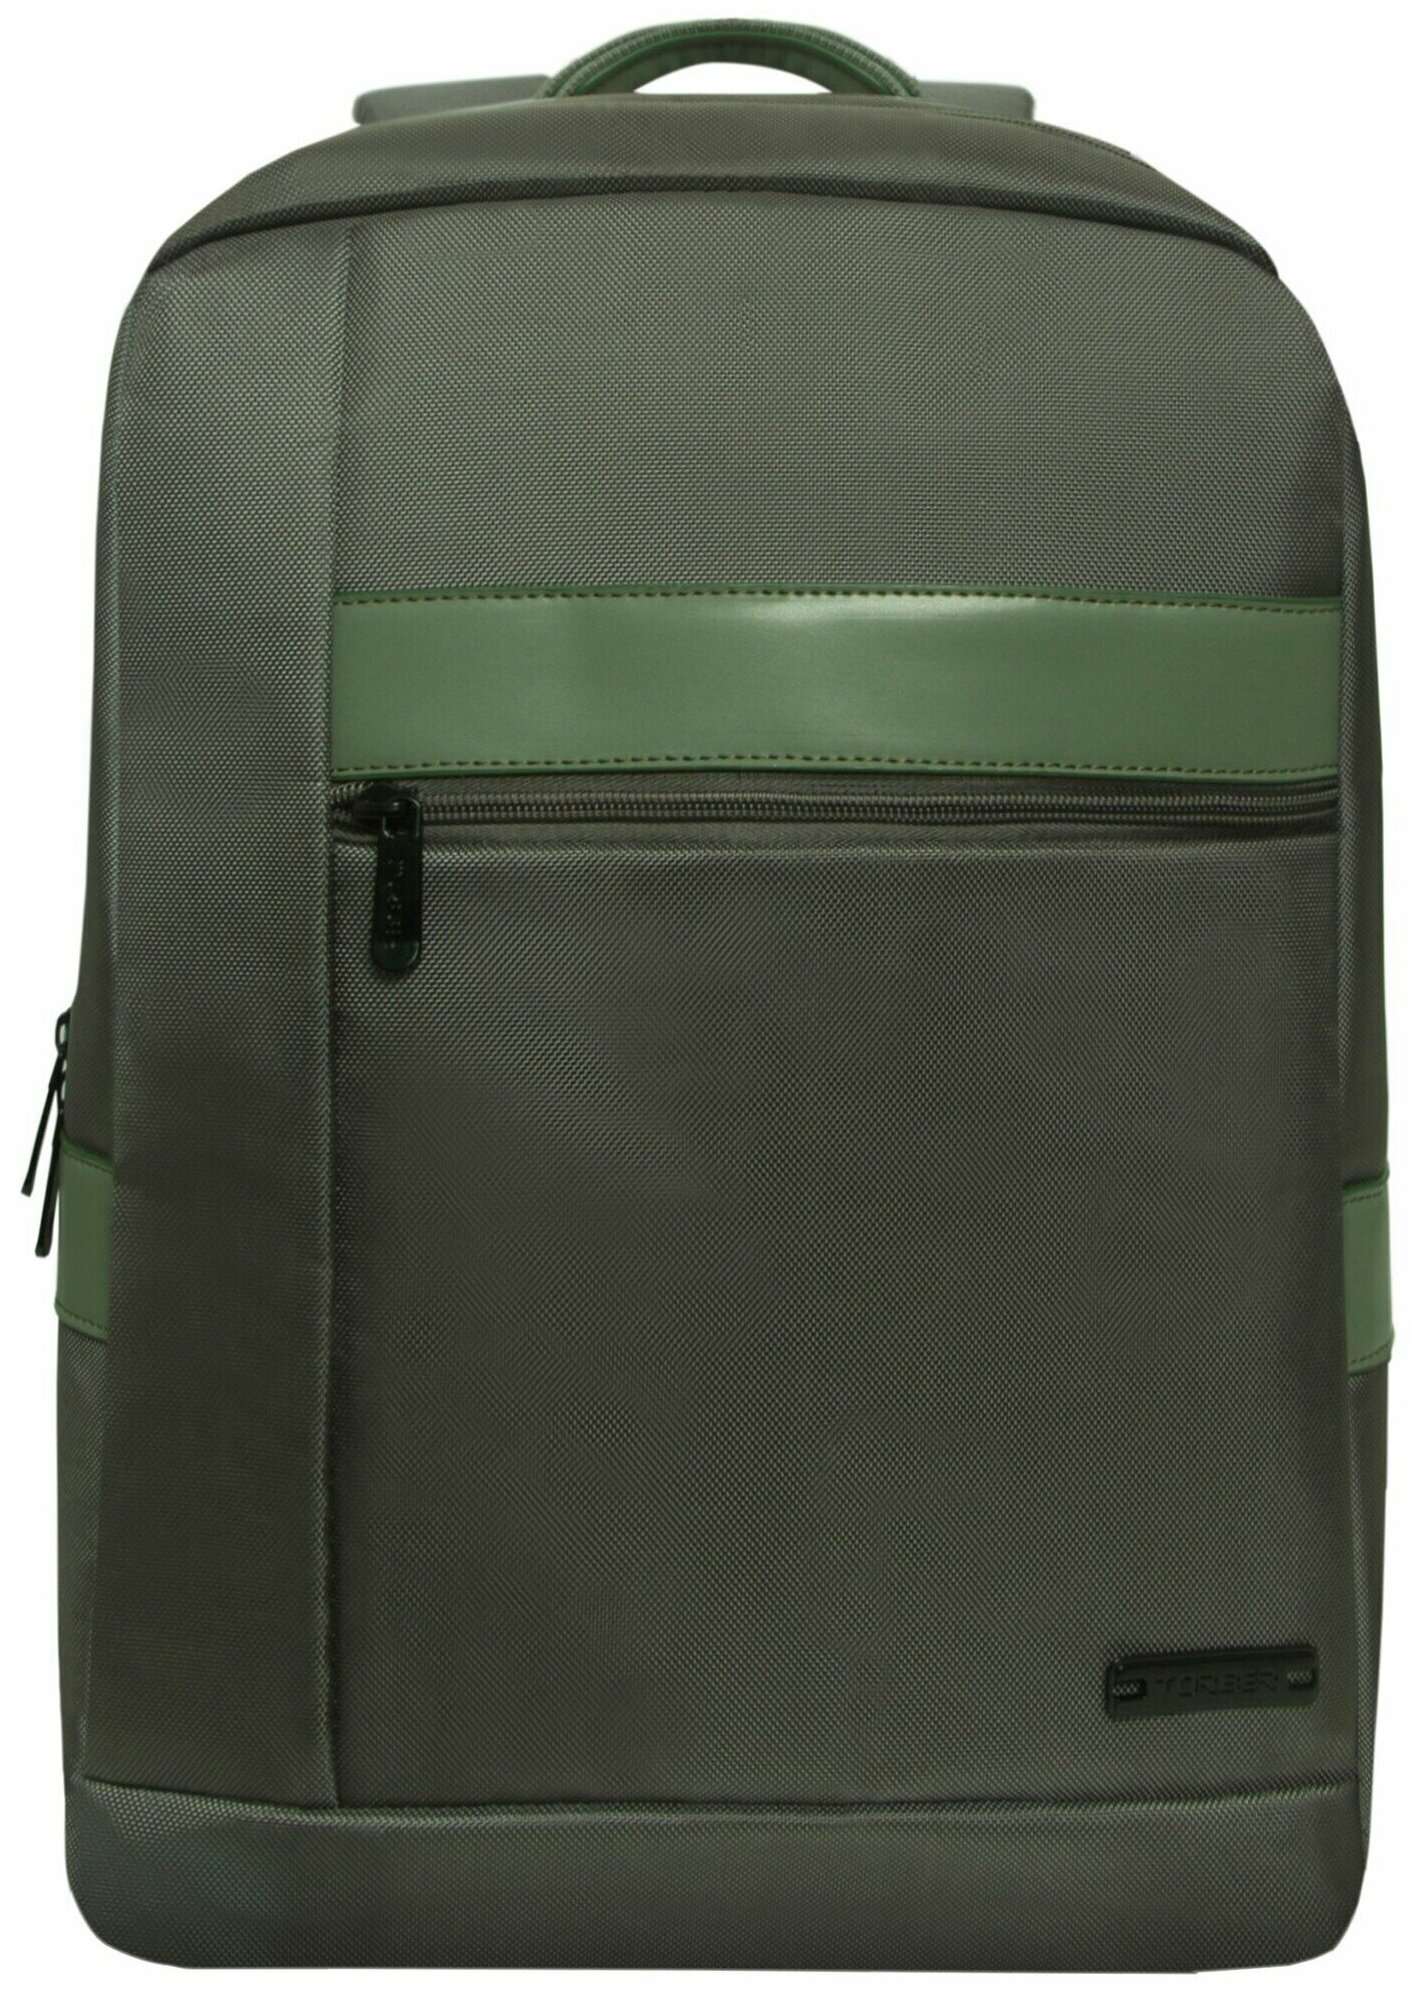 Деловой рюкзак TORBER VECTOR T7925-GRE с отделением для ноутбука 15", cеро-зеленый, полиэстер 840D, 44 х 30 x 9,5 см, 13,8 л